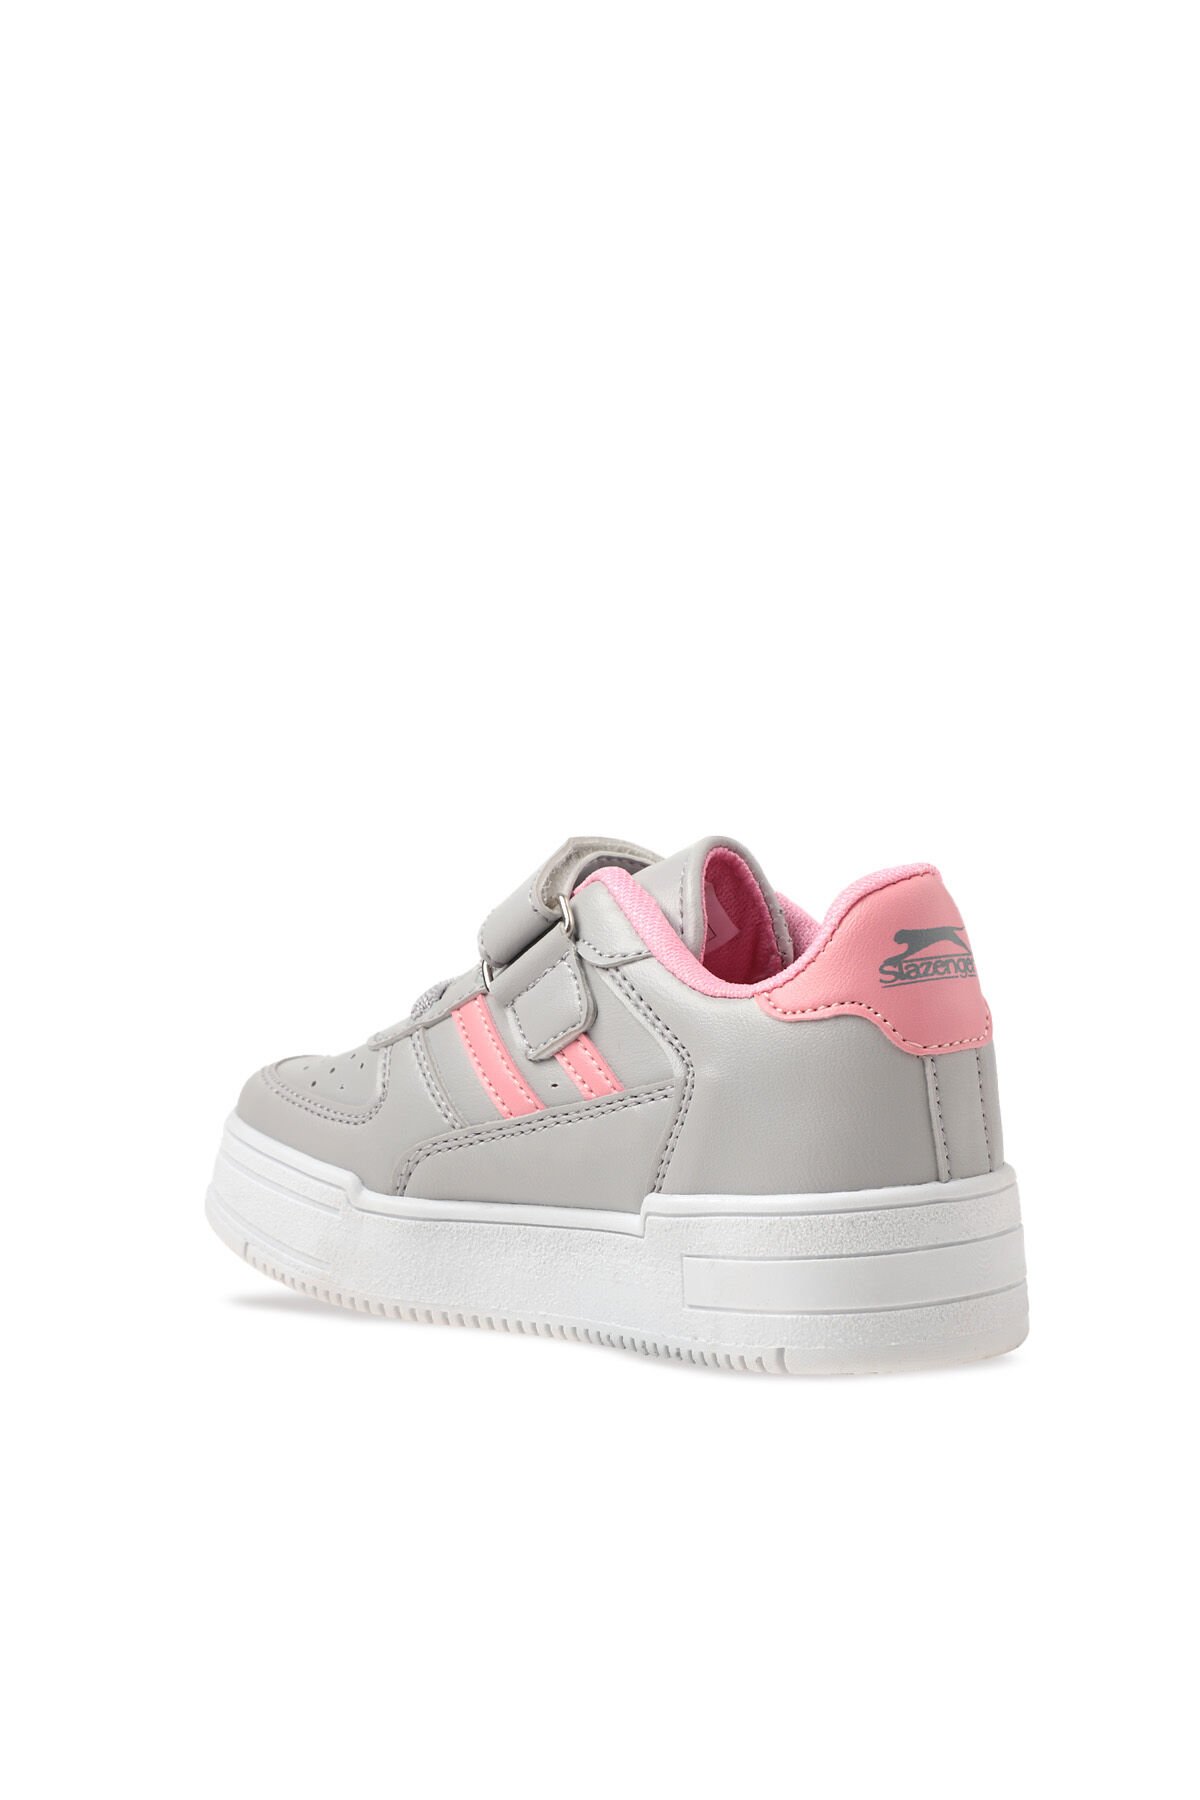 Slazenger CAMP Sneaker Kız Çocuk Ayakkabı Gri / Pembe - Thumbnail